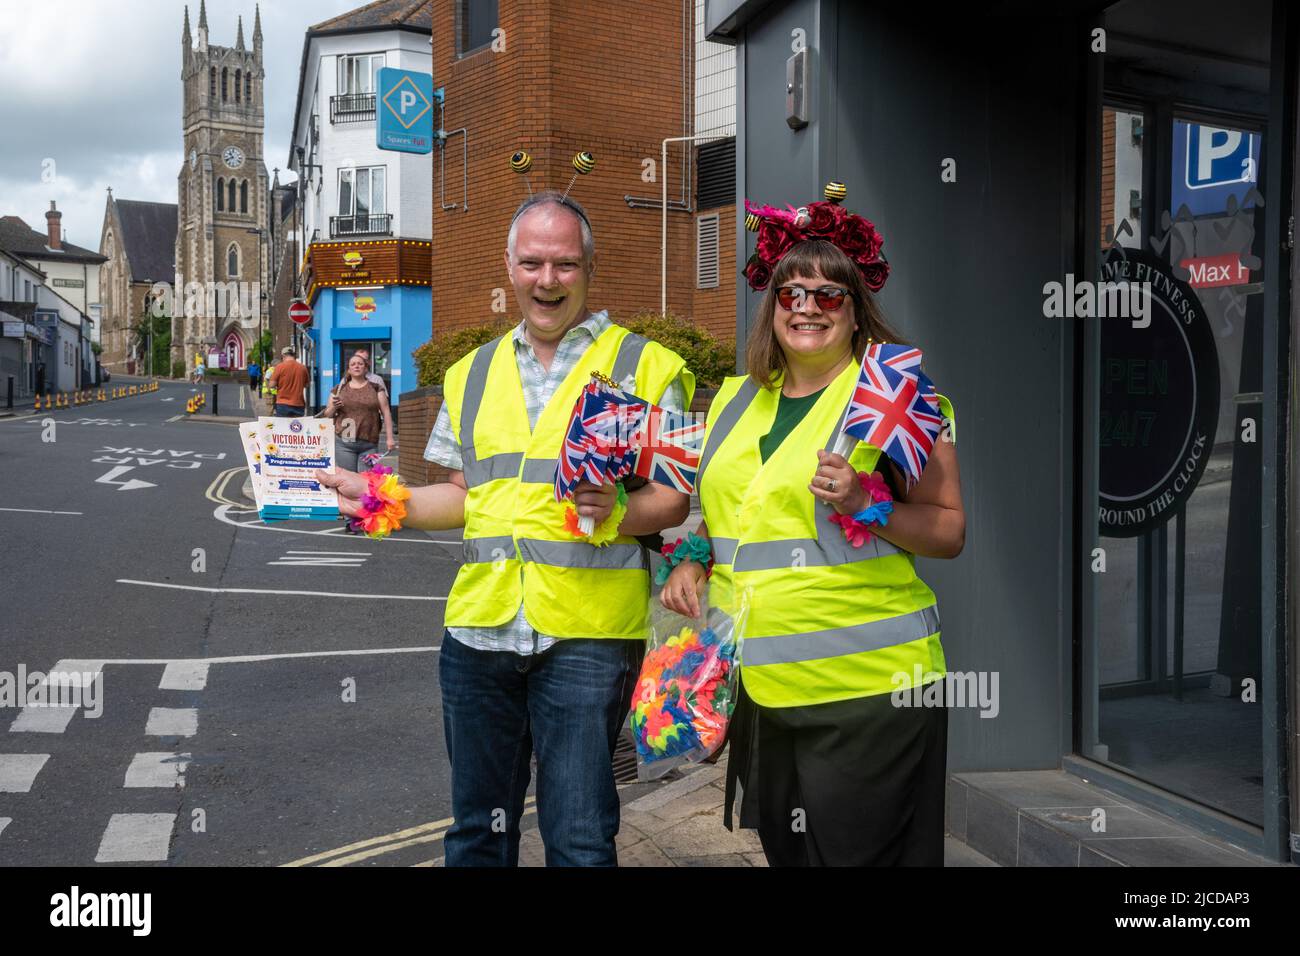 Des bénévoles distribuant des programmes de la fête de Victoria et des drapeaux de Jack syndicaux à l'événement annuel à Aldershot, Hampshire, Angleterre, Royaume-Uni, juin 2022 Banque D'Images